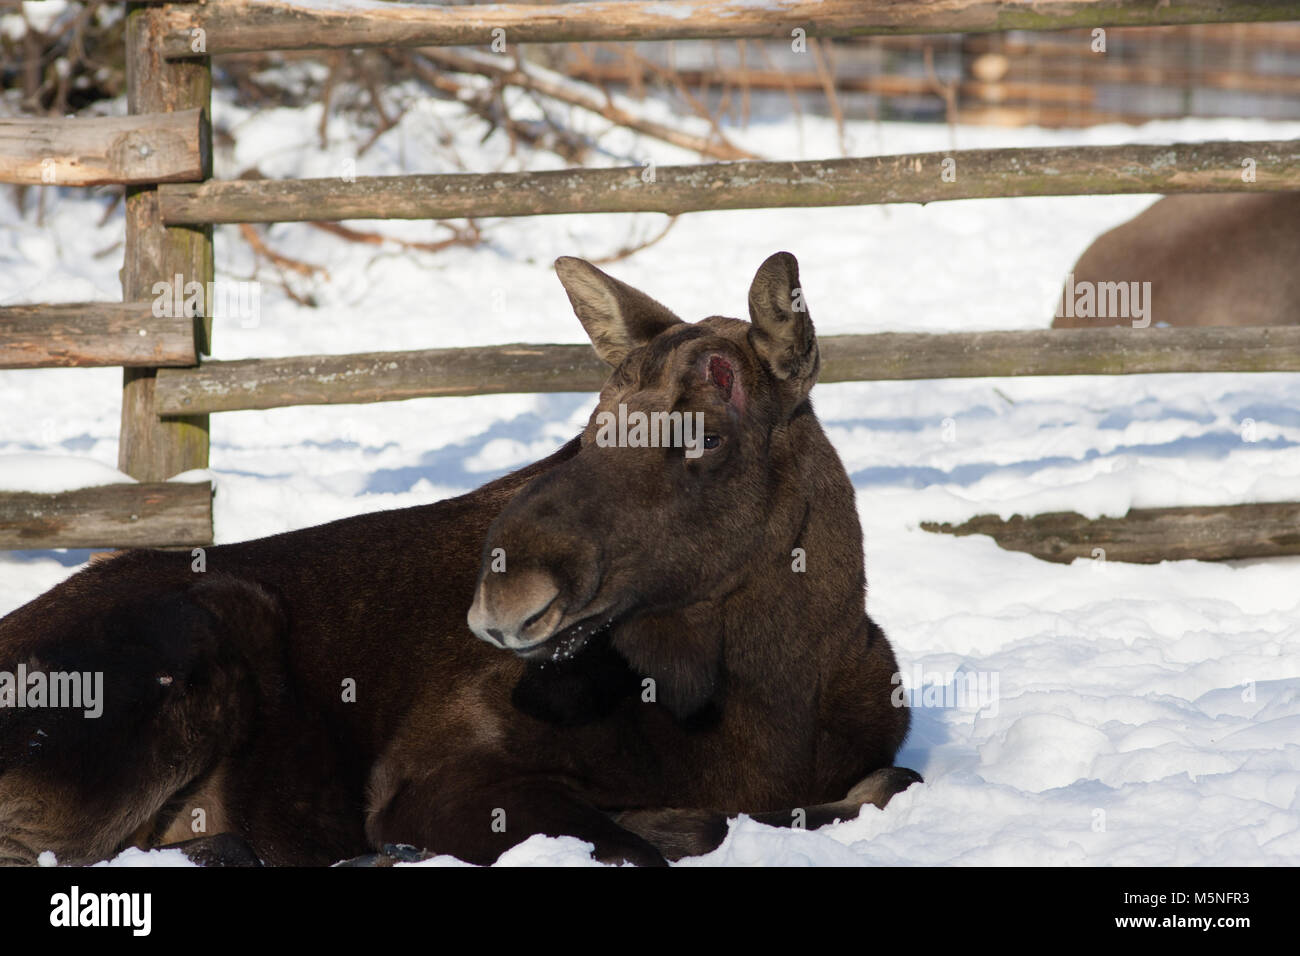 Moose, Älg, (Alces alces) Stock Photo